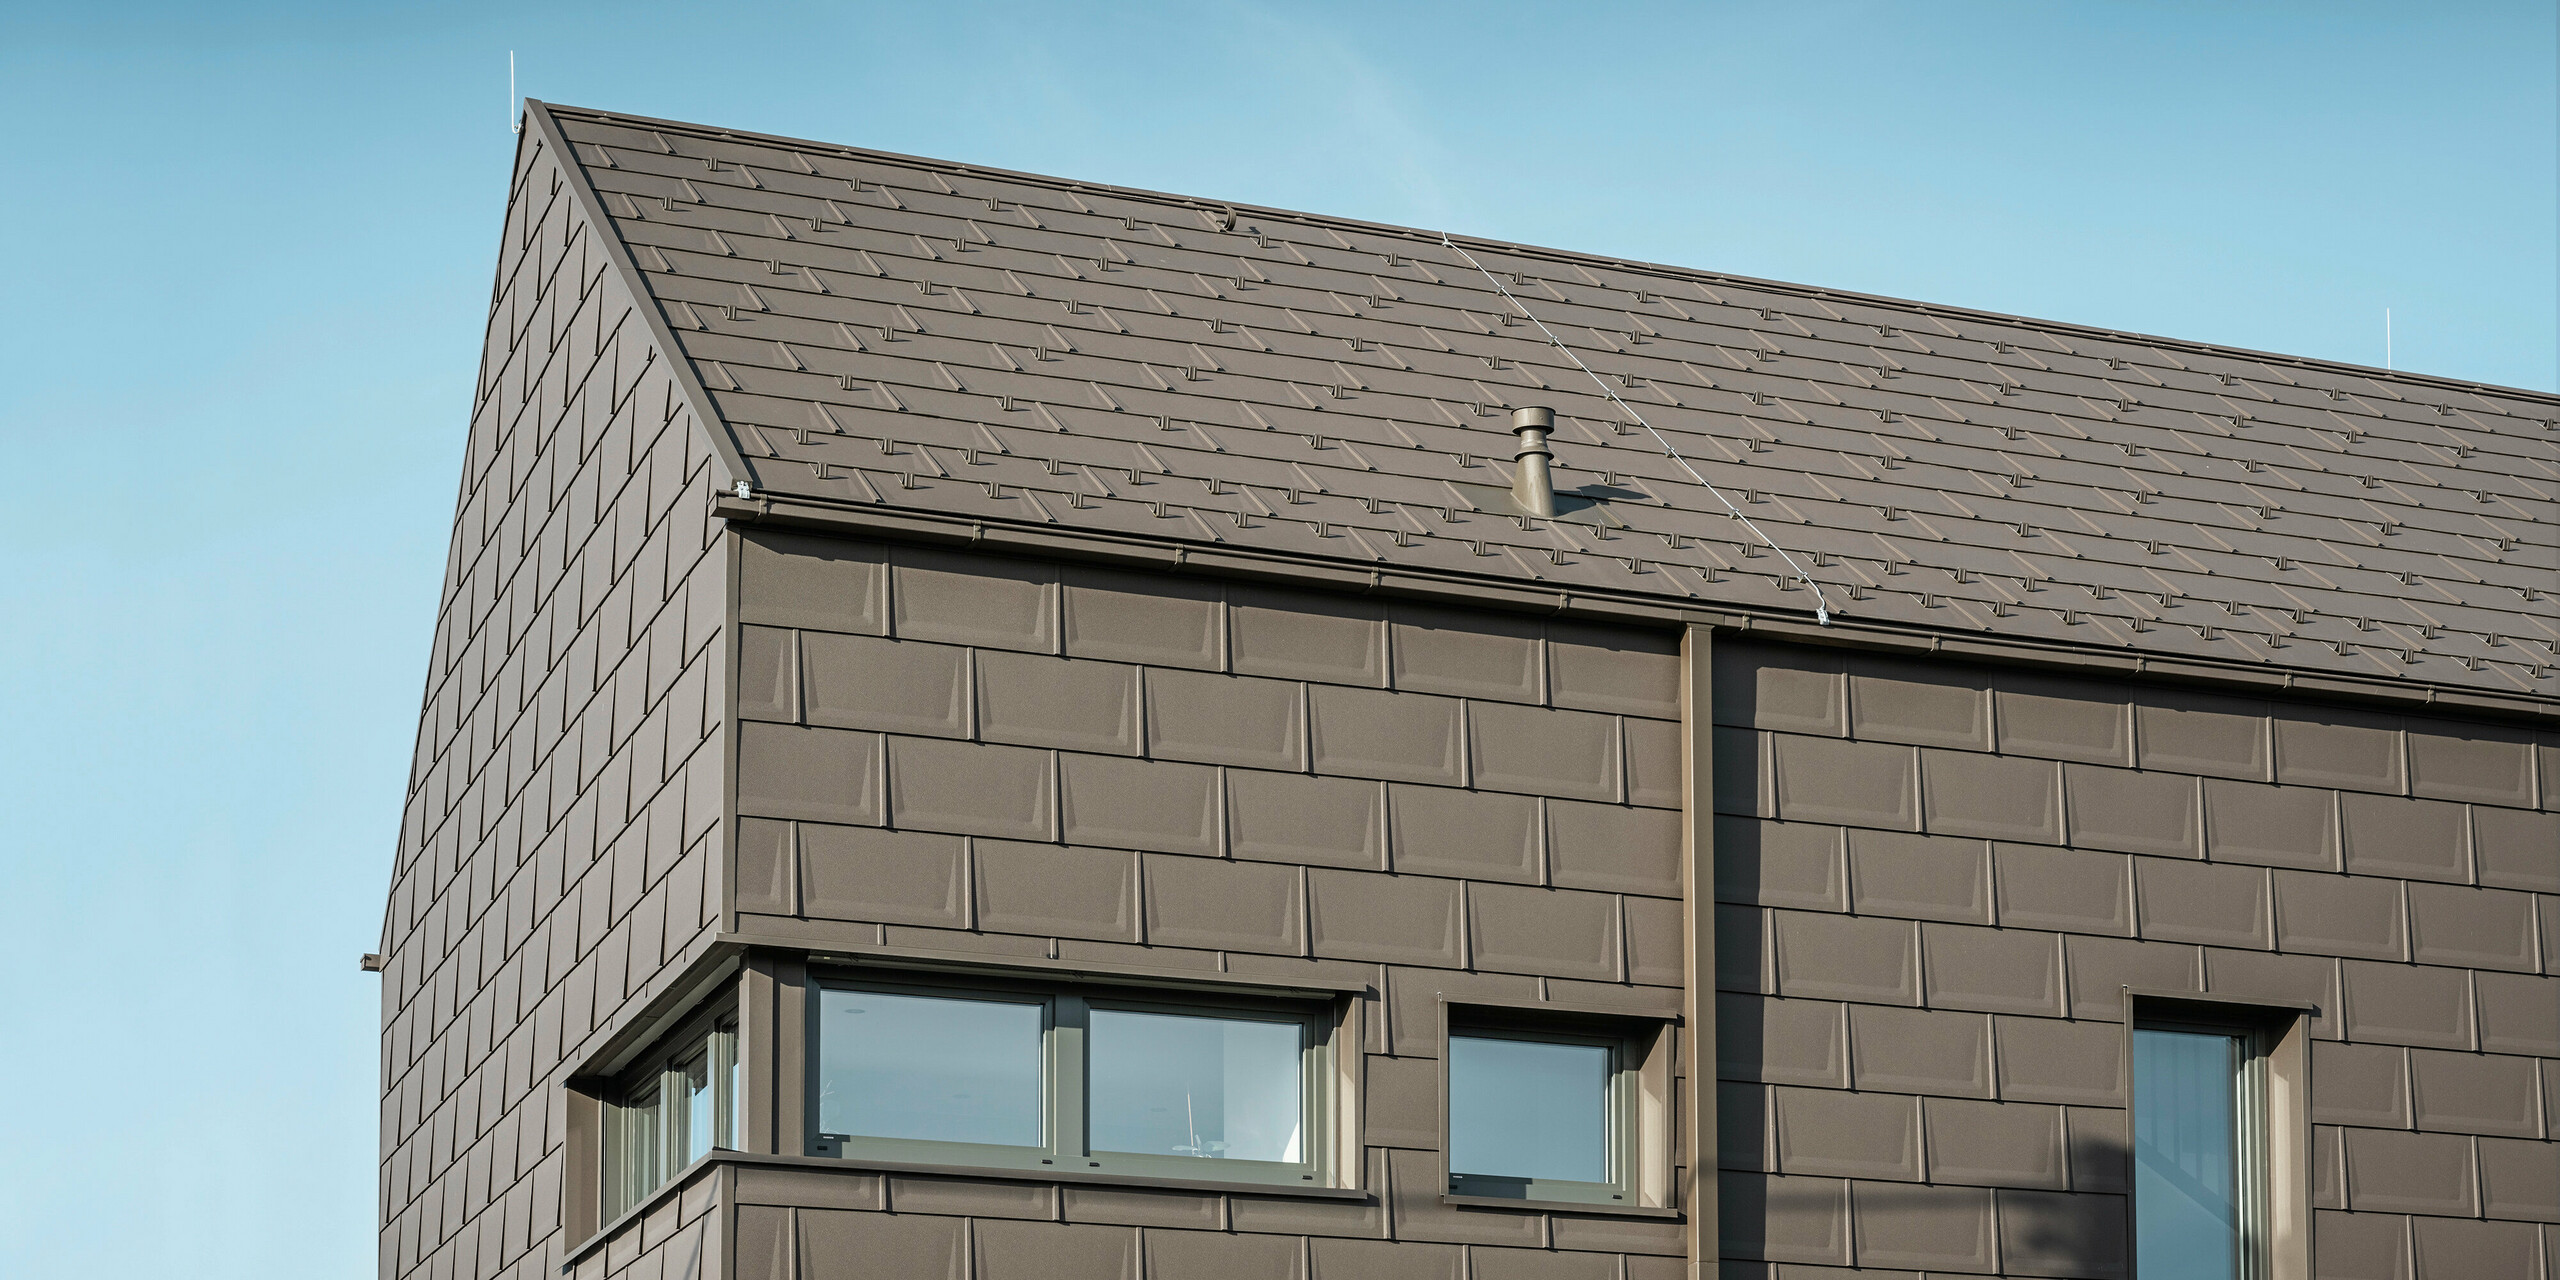 Detailansicht eines Einfamilienhauses in Neukirchen, Österreich, mit einer Dach- und Fassadenverkleidung aus PREFA Dachplatten R.16 in P.10 Braun. Die präzise Überlappung der Platten sorgt für ein einheitliches und ansprechendes Erscheinungsbild, das moderne Ästhetik mit Funktionalität verbindet. Die integrierte PREFA Dachentwässerung in Form der Kastenrinne und des Quadratrohrs in P.10 Braun zeigt das Engagement von PREFA für qualitativ hochwertige und optisch ansprechende Baukomponenten.